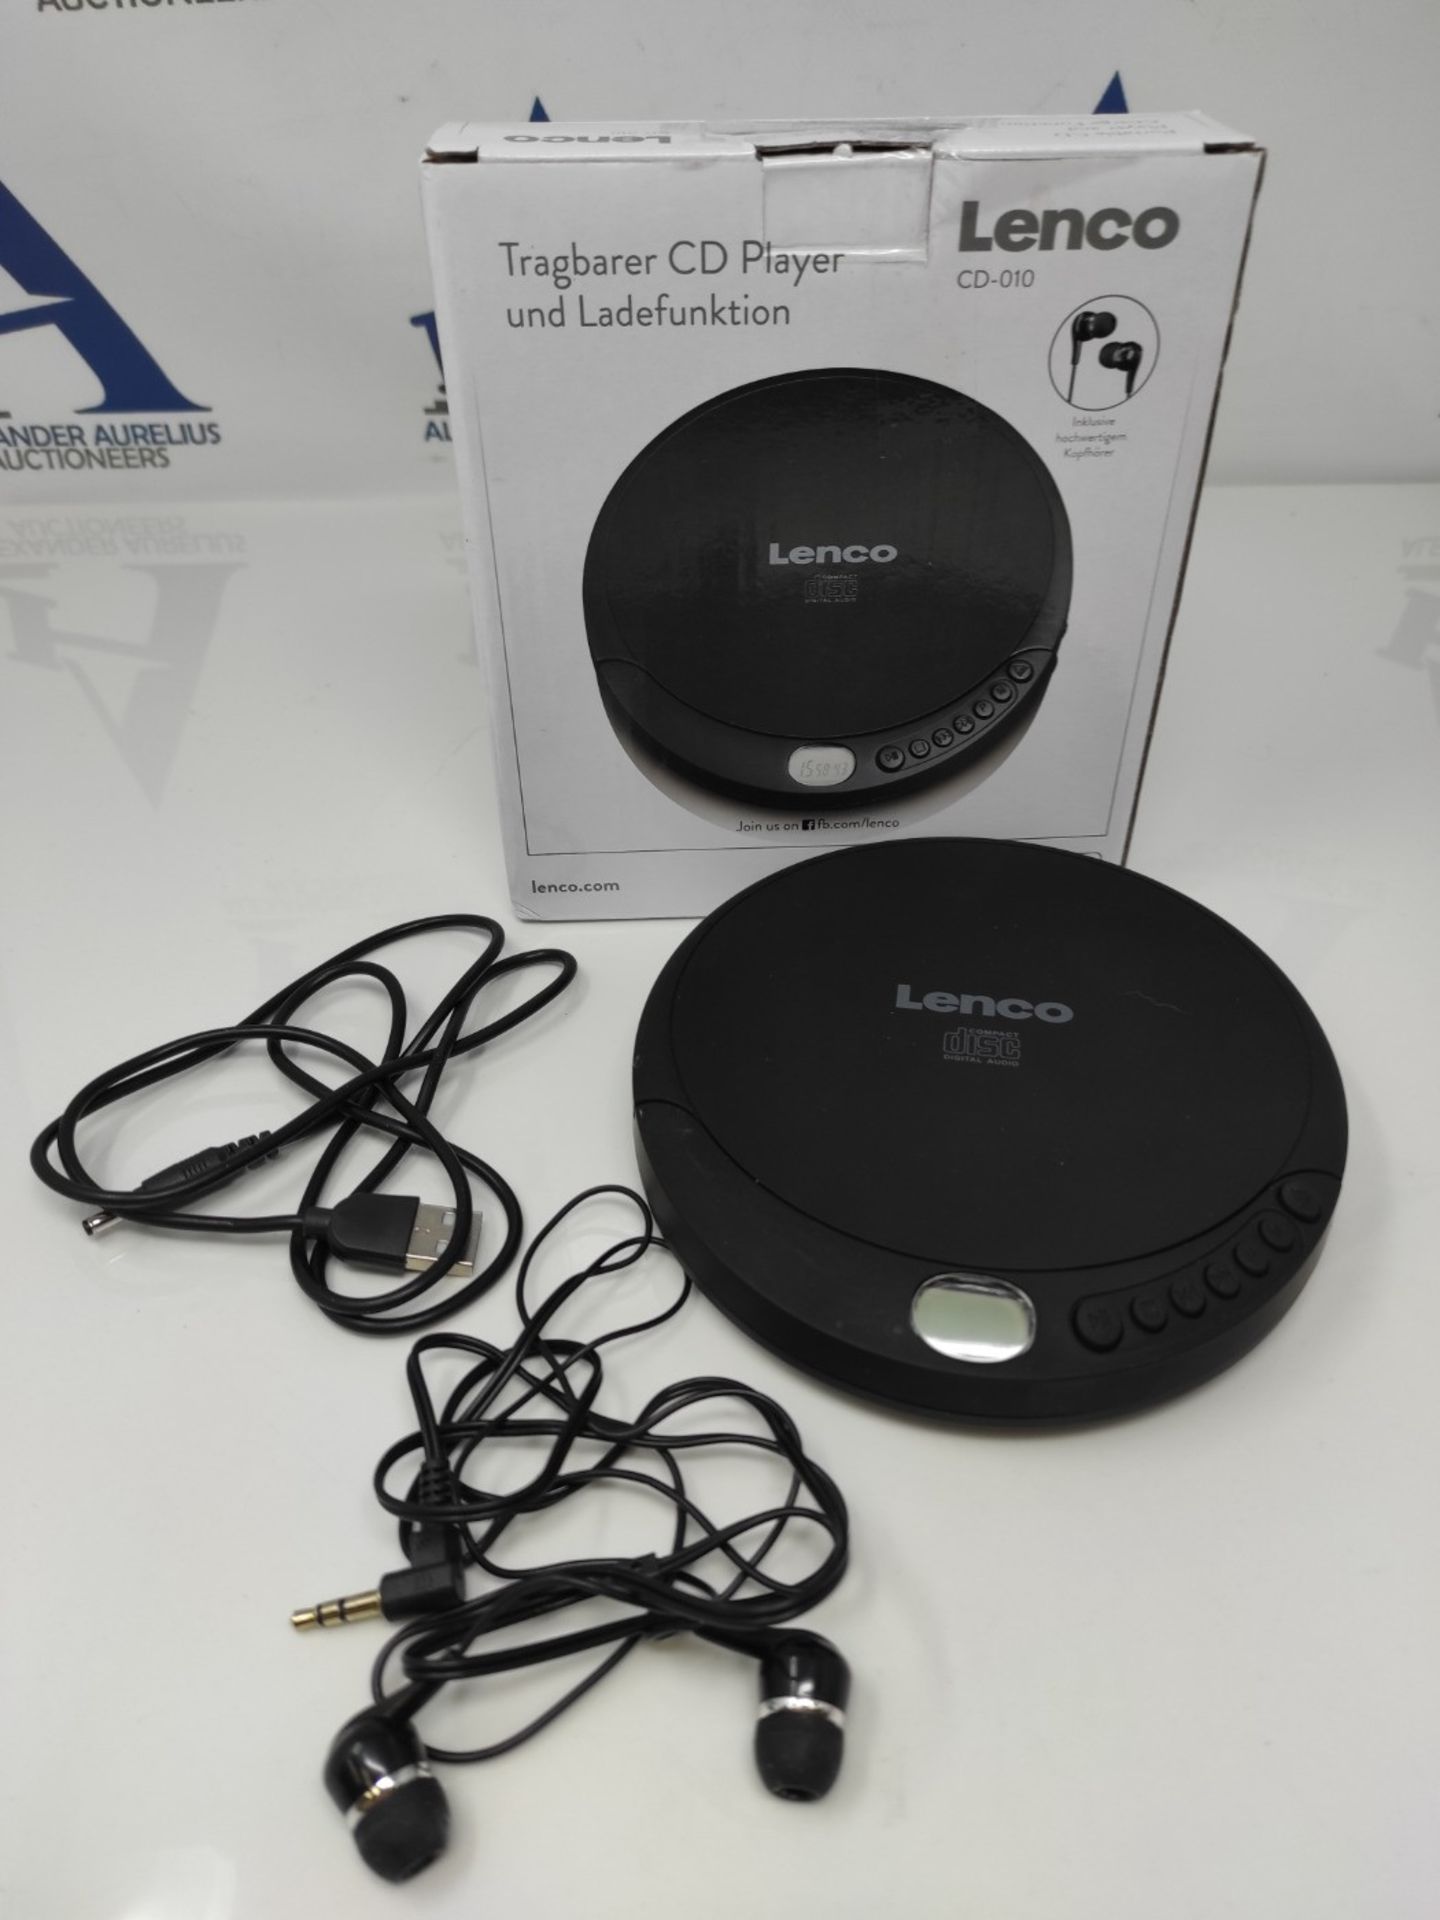 Lenco CD-010 - Portable CD Player Walkman - Diskman - CD Walkman - With headphones and - Image 2 of 2